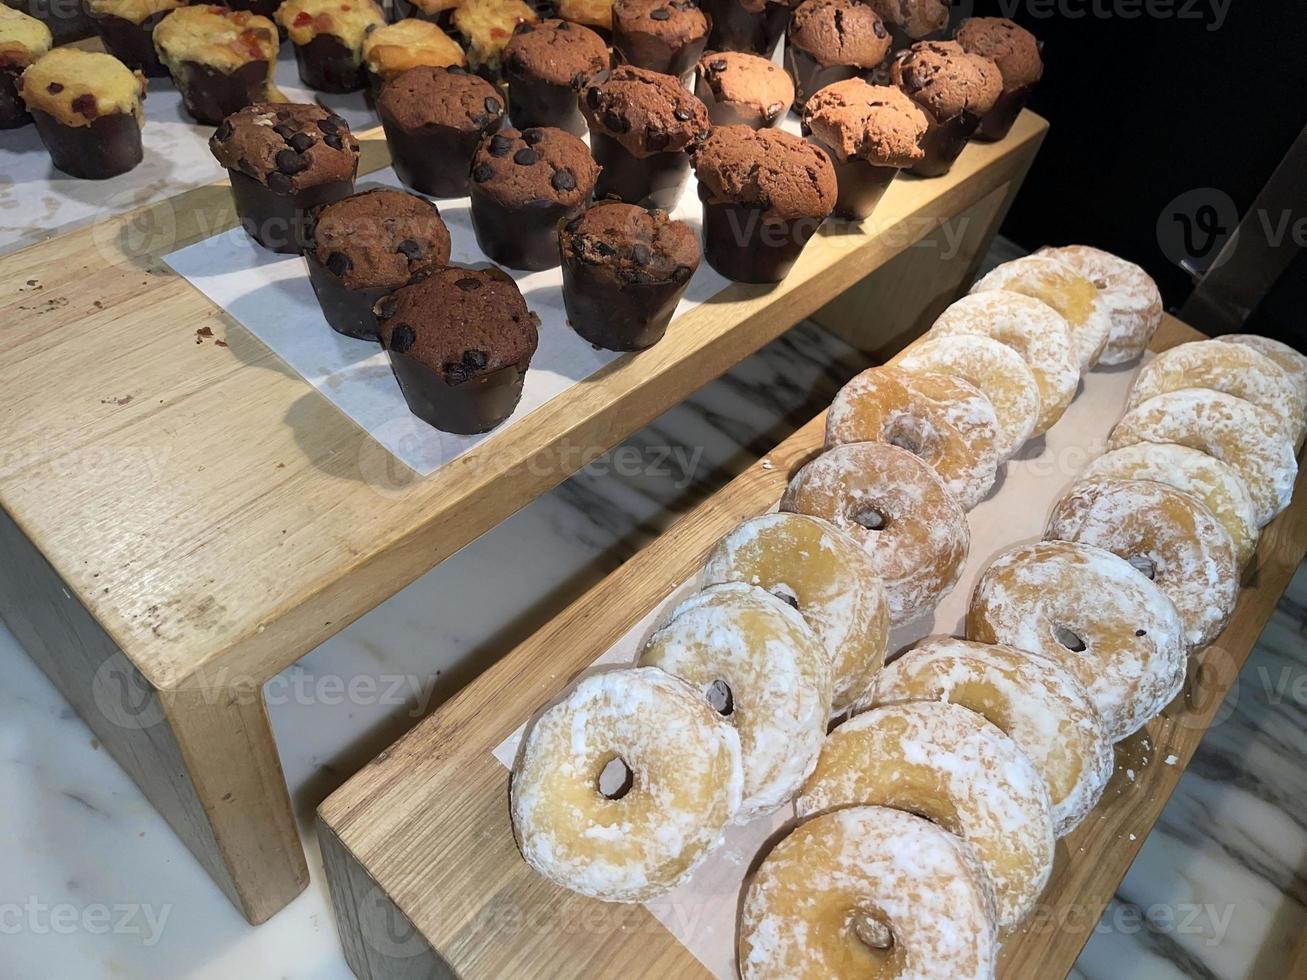 filas de deliciosos donuts frescos en la panadería, deliciosos donuts múltiples, donuts de enfoque selectivo foto